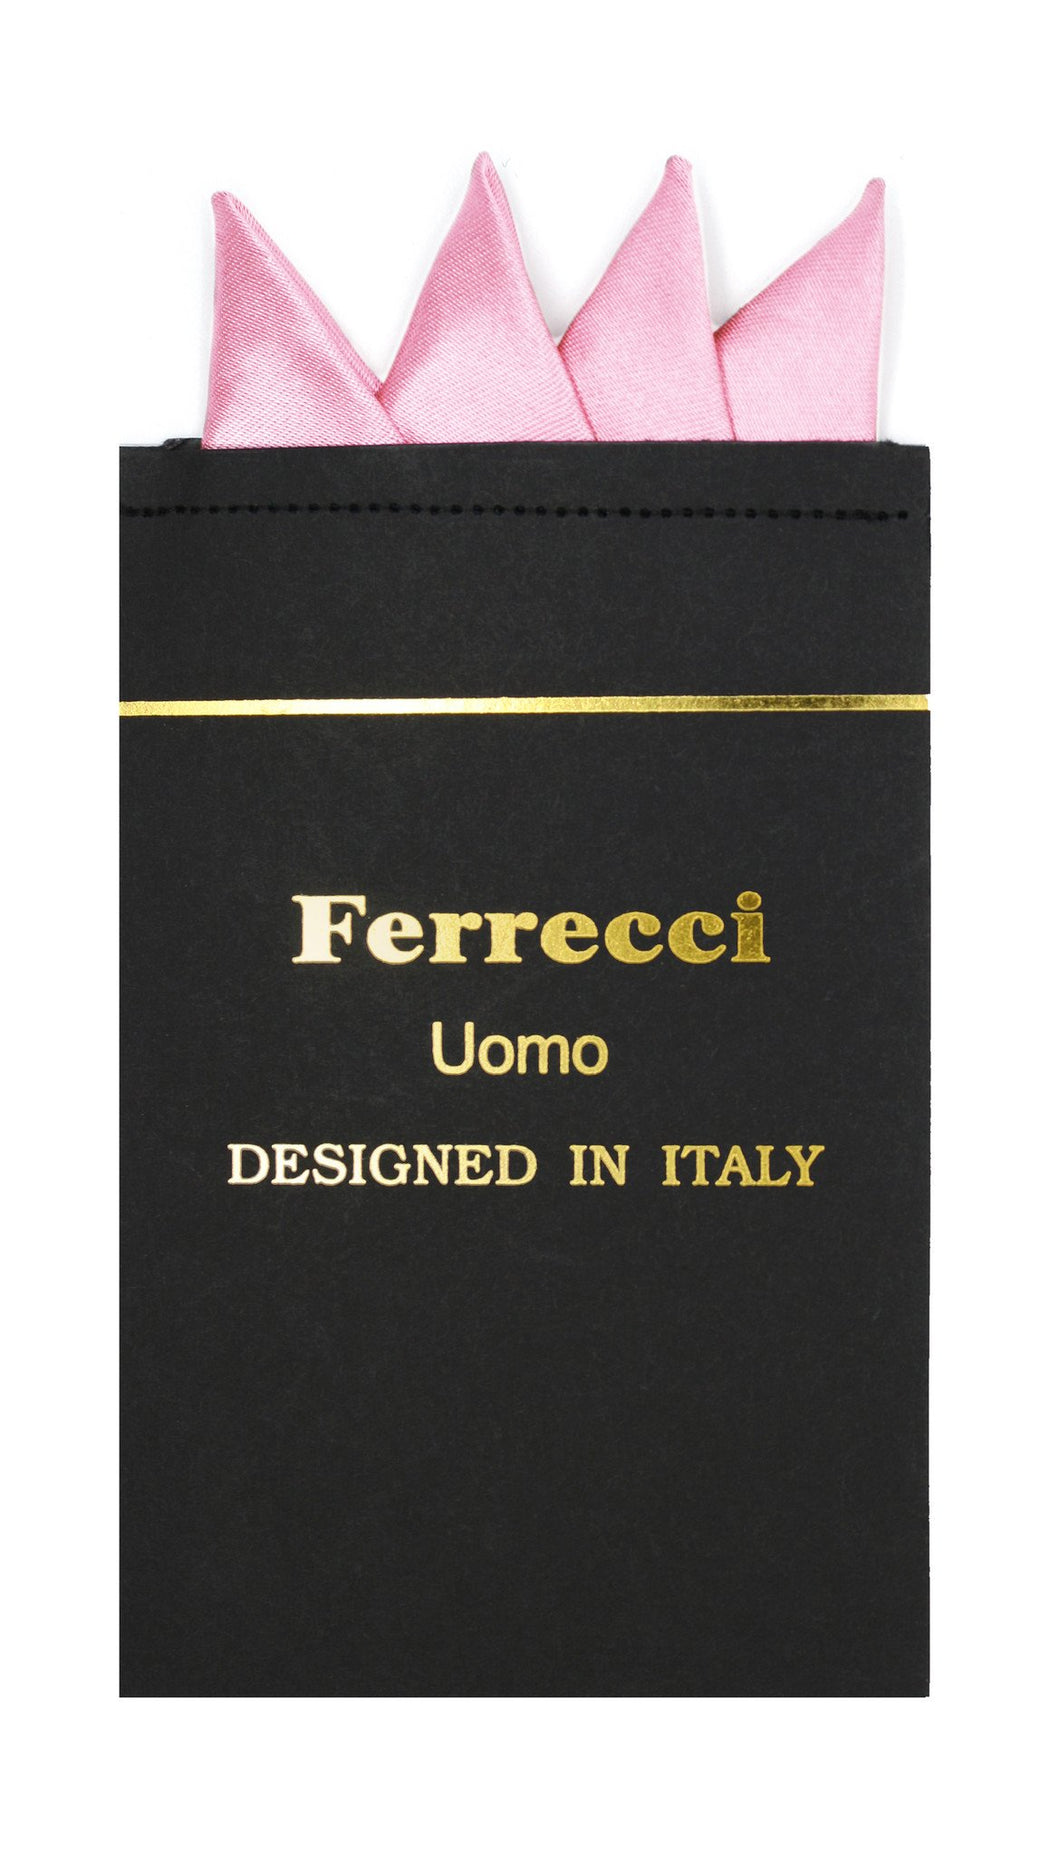 Pre-Folded Microfiber Pink Handkerchief Pocket Square - Ferrecci USA 